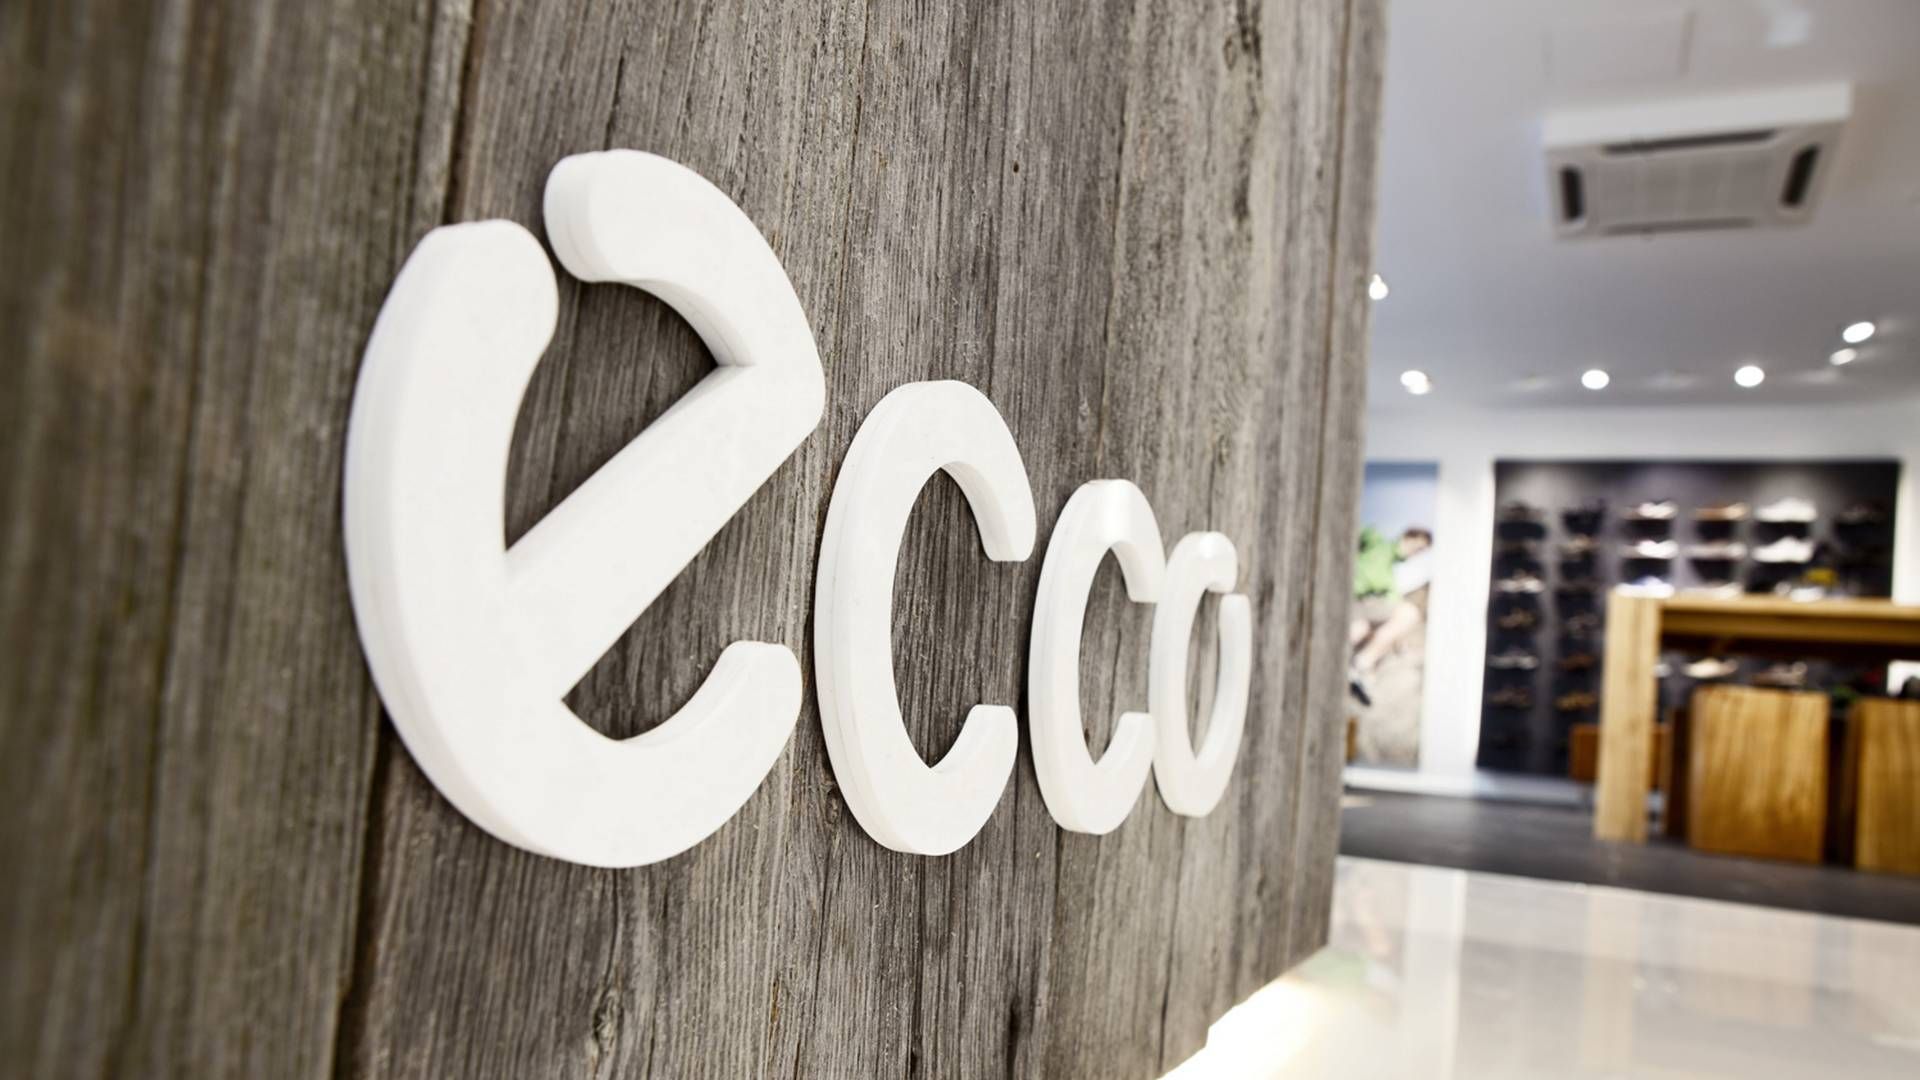 Danskerne har fået et langt mere negativt syn på Ecco, efter virksomheden har besluttet at fortsætte sine forretninger i Rusland. | Foto: PR / Ecco